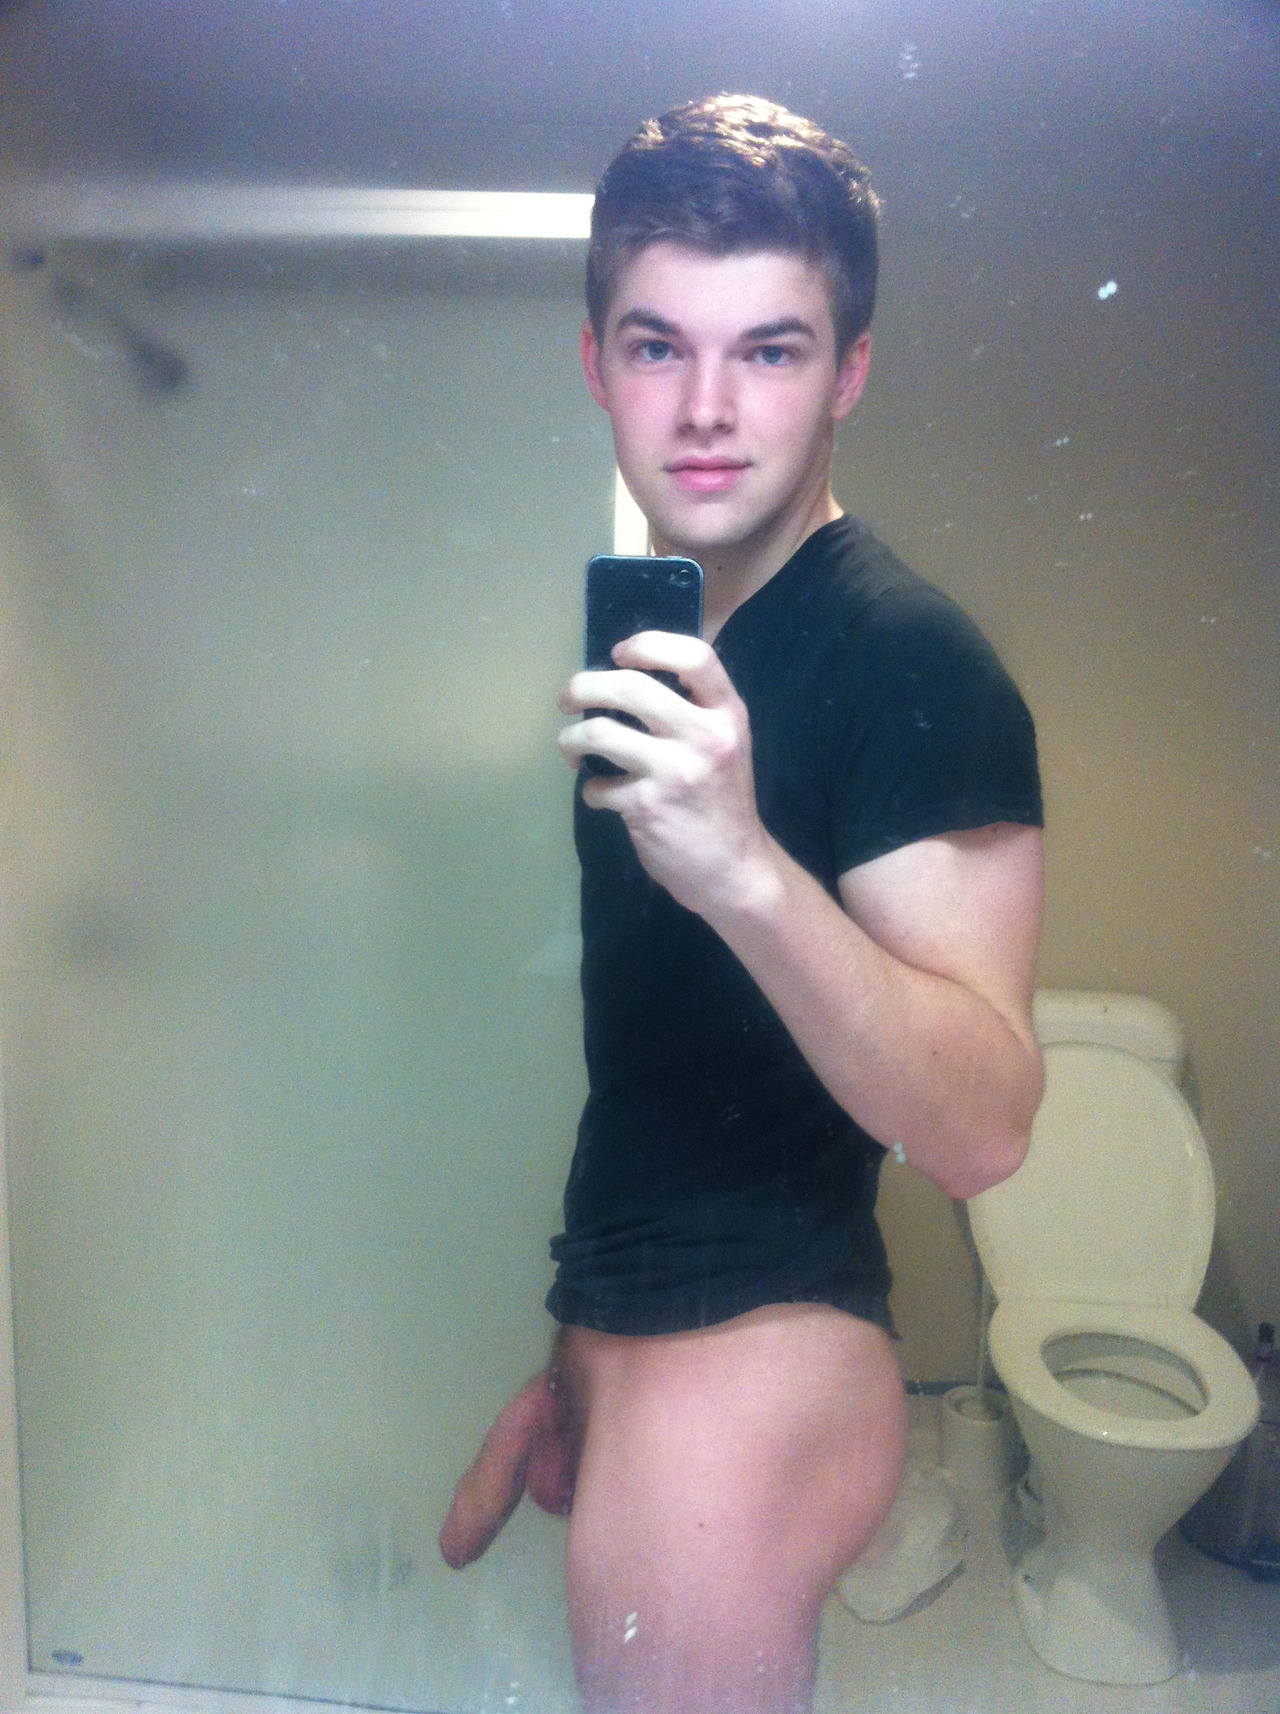 фото голого парня в туалете